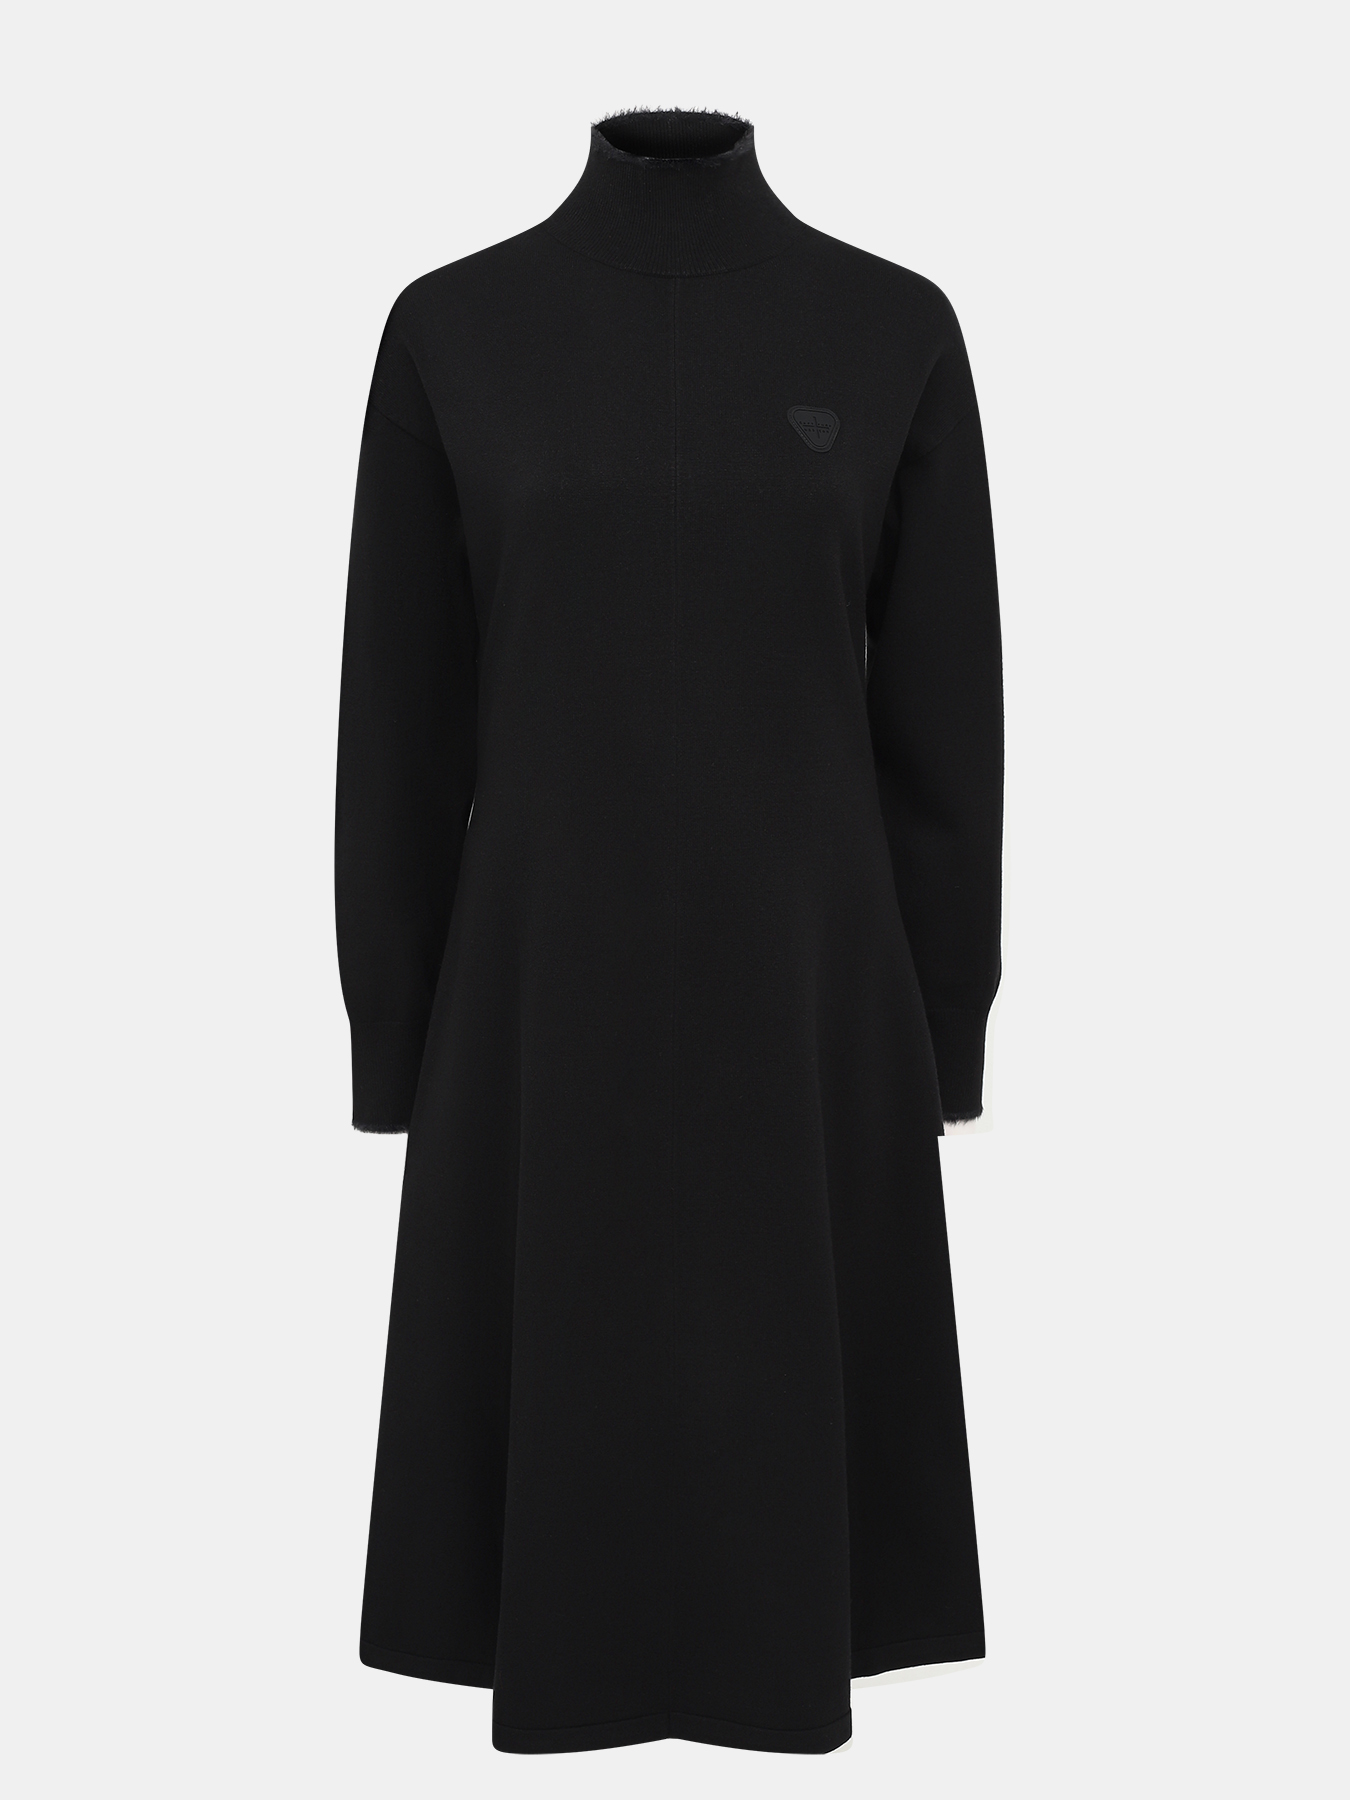 Платье Gertrude+Gaston 429298-043, цвет черный, размер 44-46